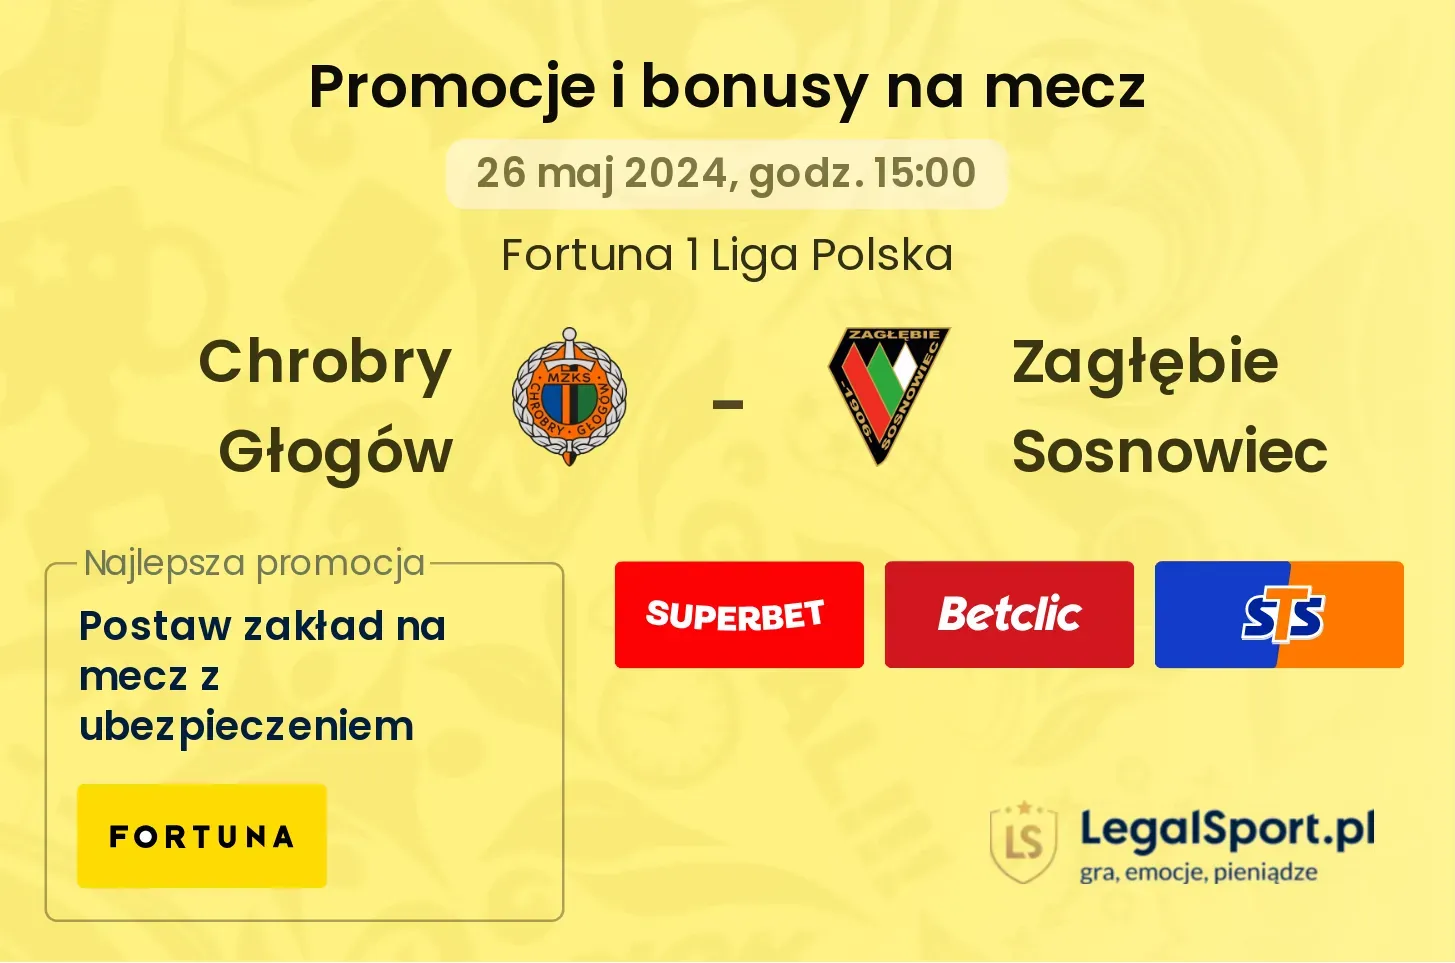 Chrobry Głogów - Zagłębie Sosnowiec promocje bonusy na mecz